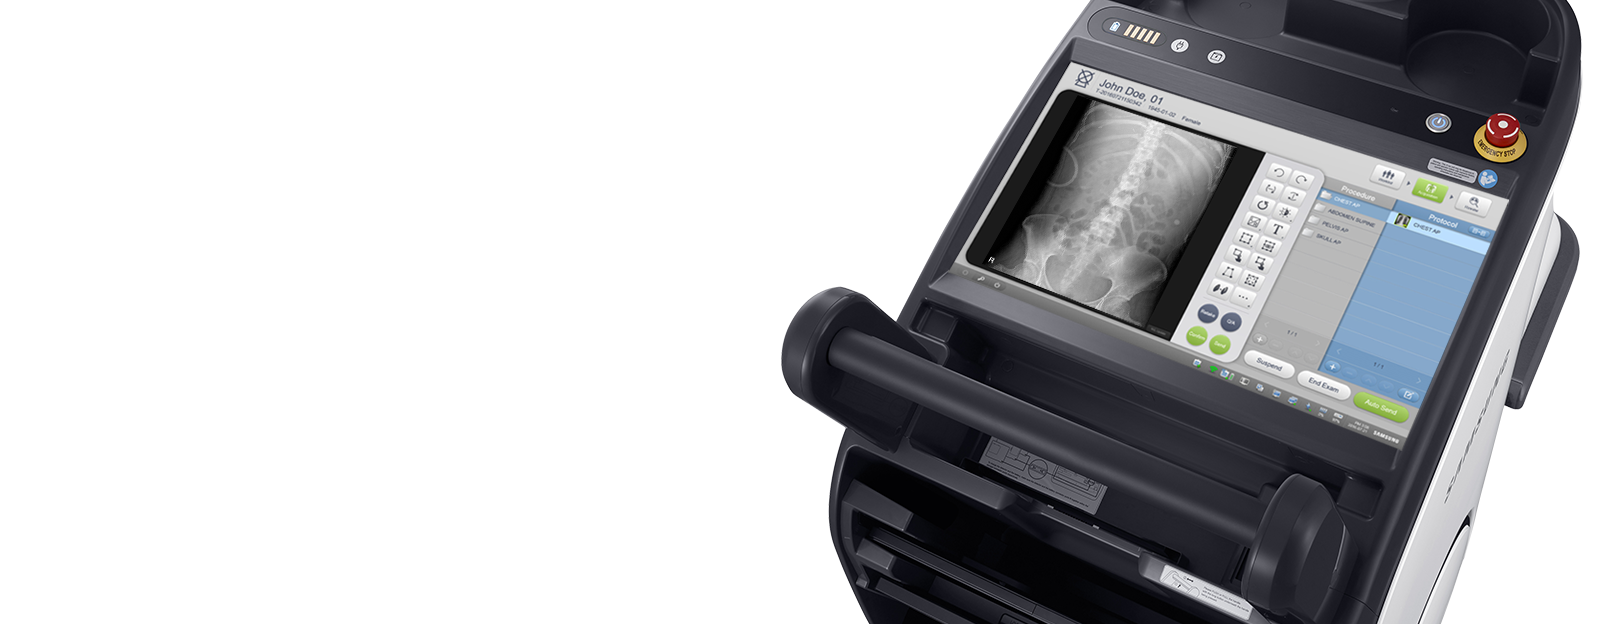 Digitales Röntgensystem GM85 von Samsung mit Röntgenbild von Wirbelsäule.